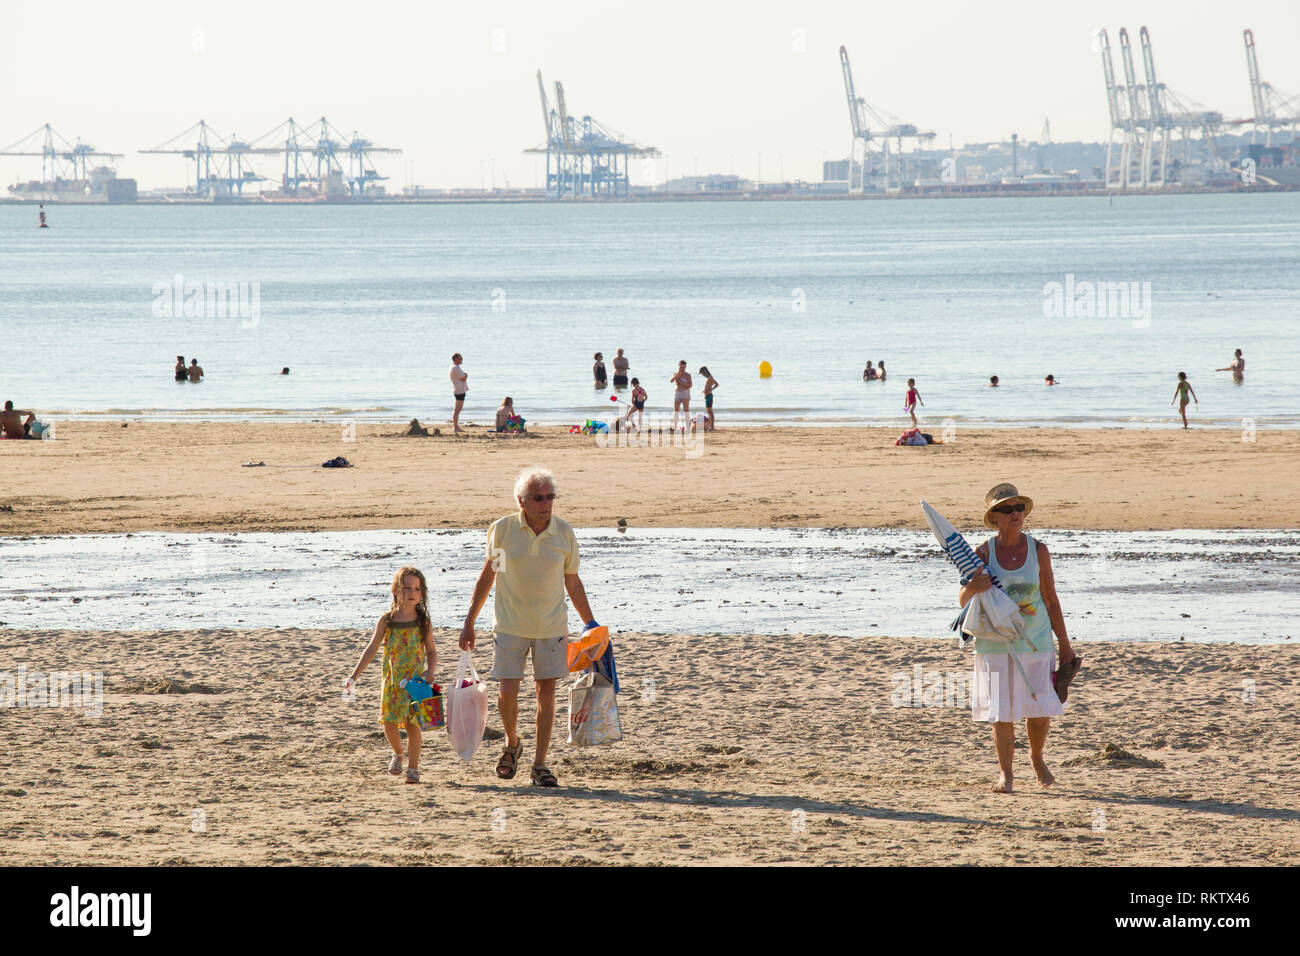 Urlauber genießen die Sonne Sommer am Strand Plage de Butin, Honfleur, Frankreich mit der Gantry Cranes Container Hafen von Le Havre über die Se Stockfoto